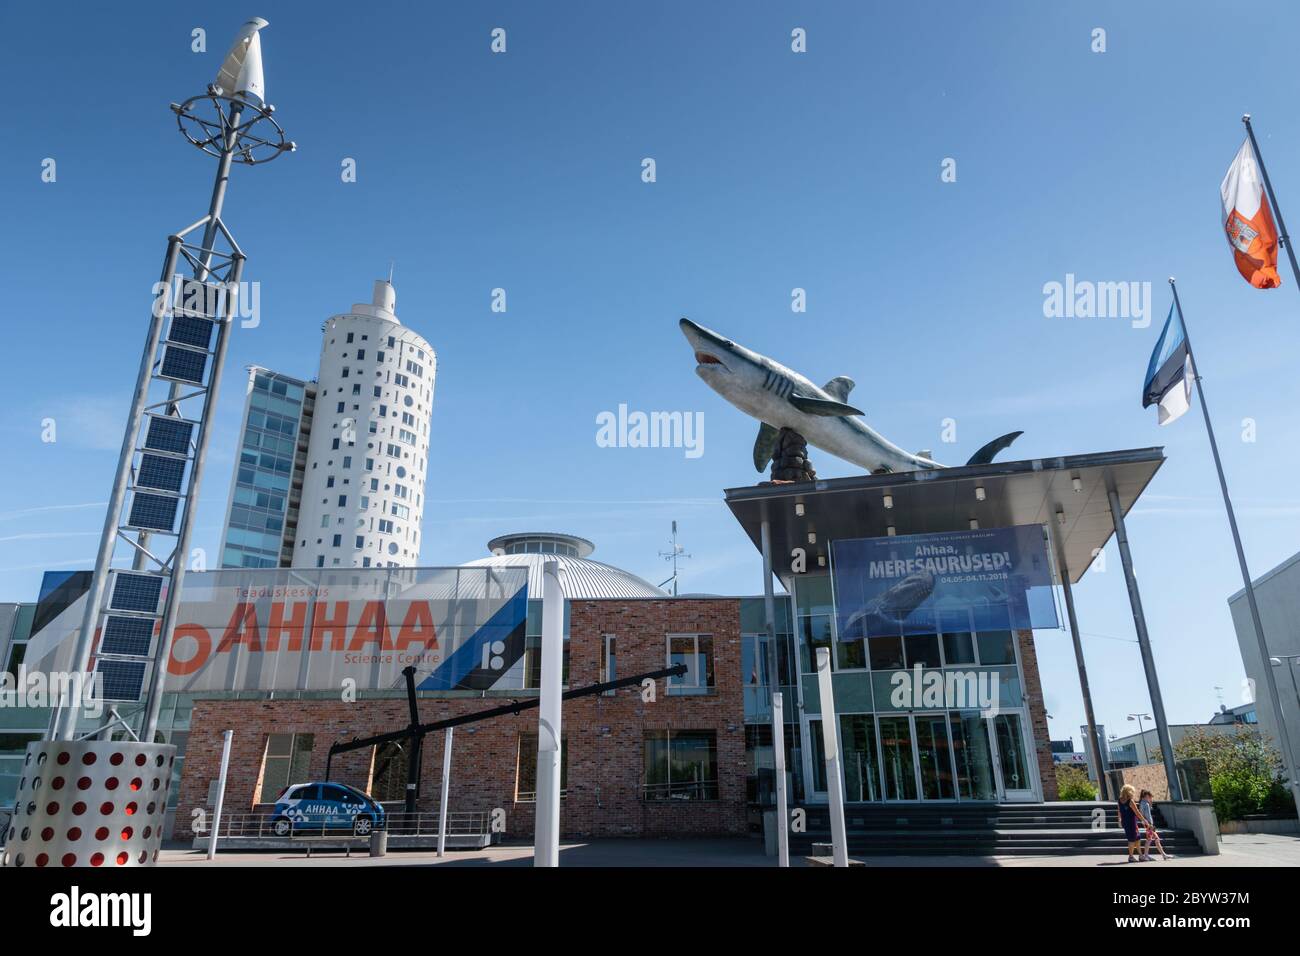 Tartu, Estonie - juin 2018 : Centre scientifique AHHAA, un centre scientifique situé à Tartu, Estonie. C'est le plus grand centre scientifique des pays baltes Banque D'Images